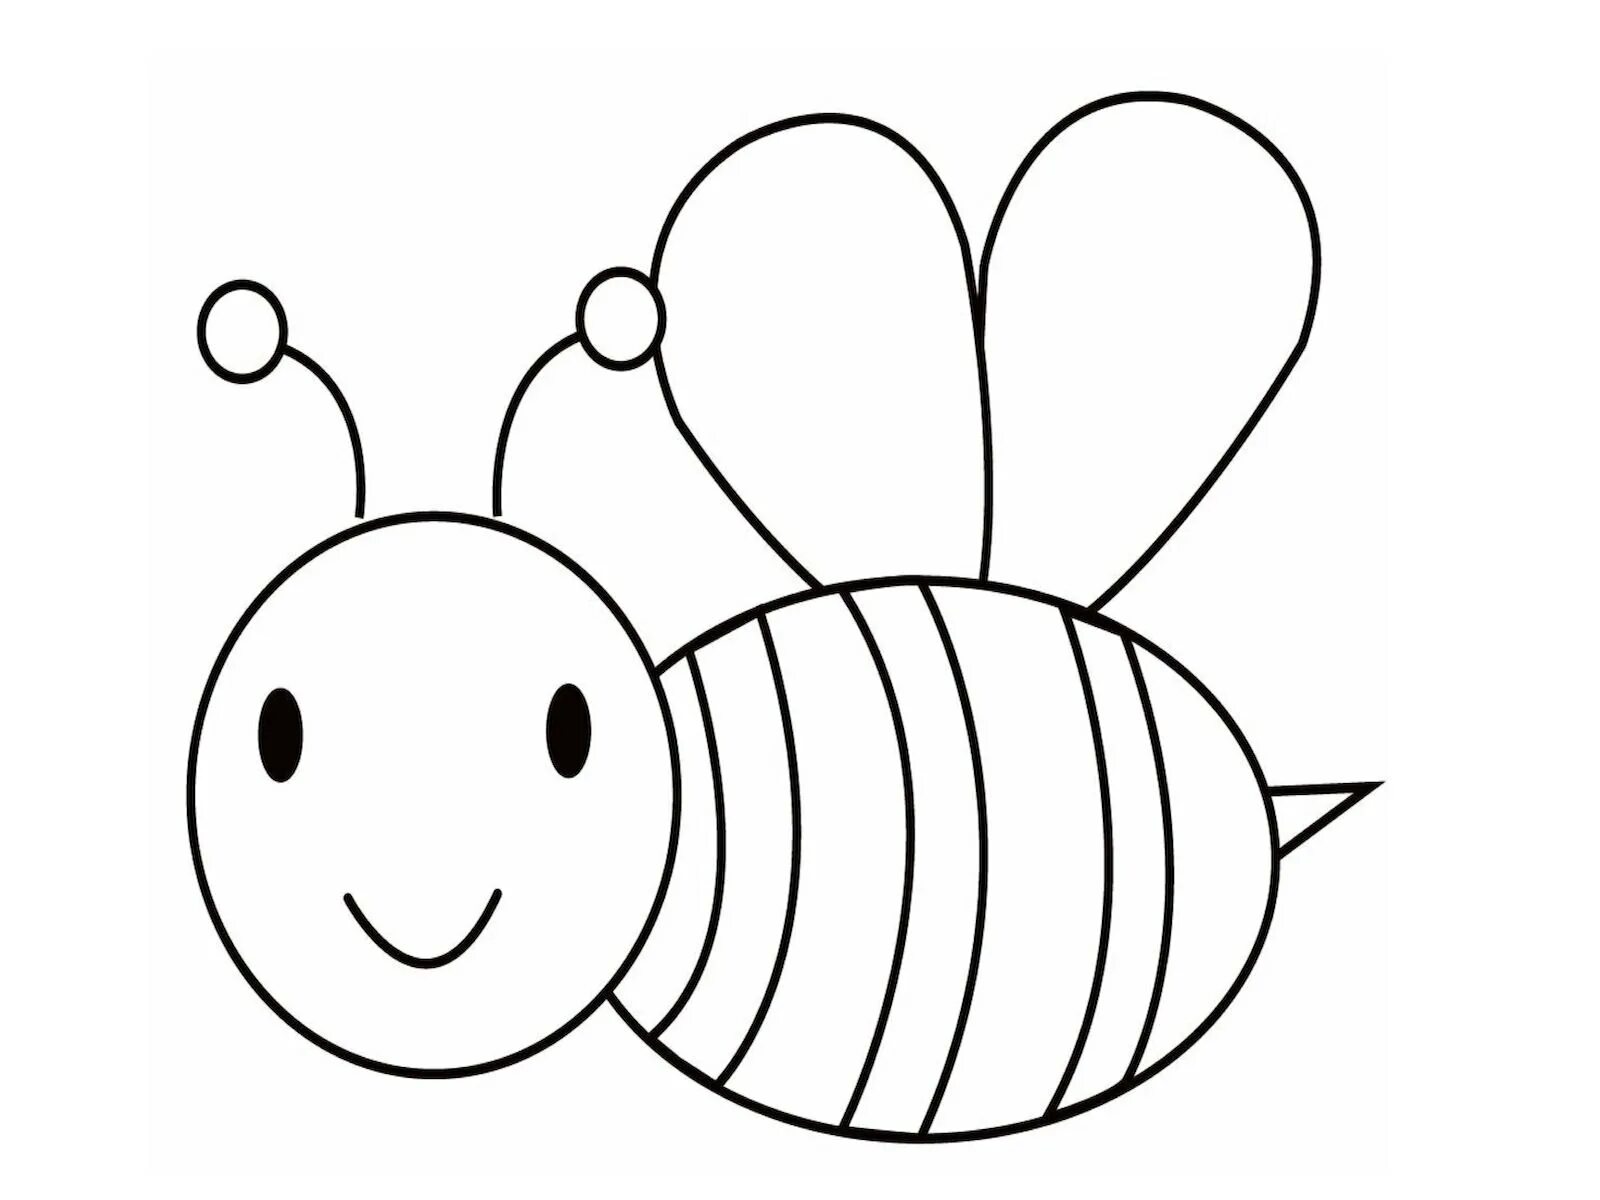 Раскраски для детей 3 лет насекомые. Пчела раскраска для детей. Пчелка раскраска для малышей. Пчелка для раскрашивания детям. Раскраска пчёлка для детей.